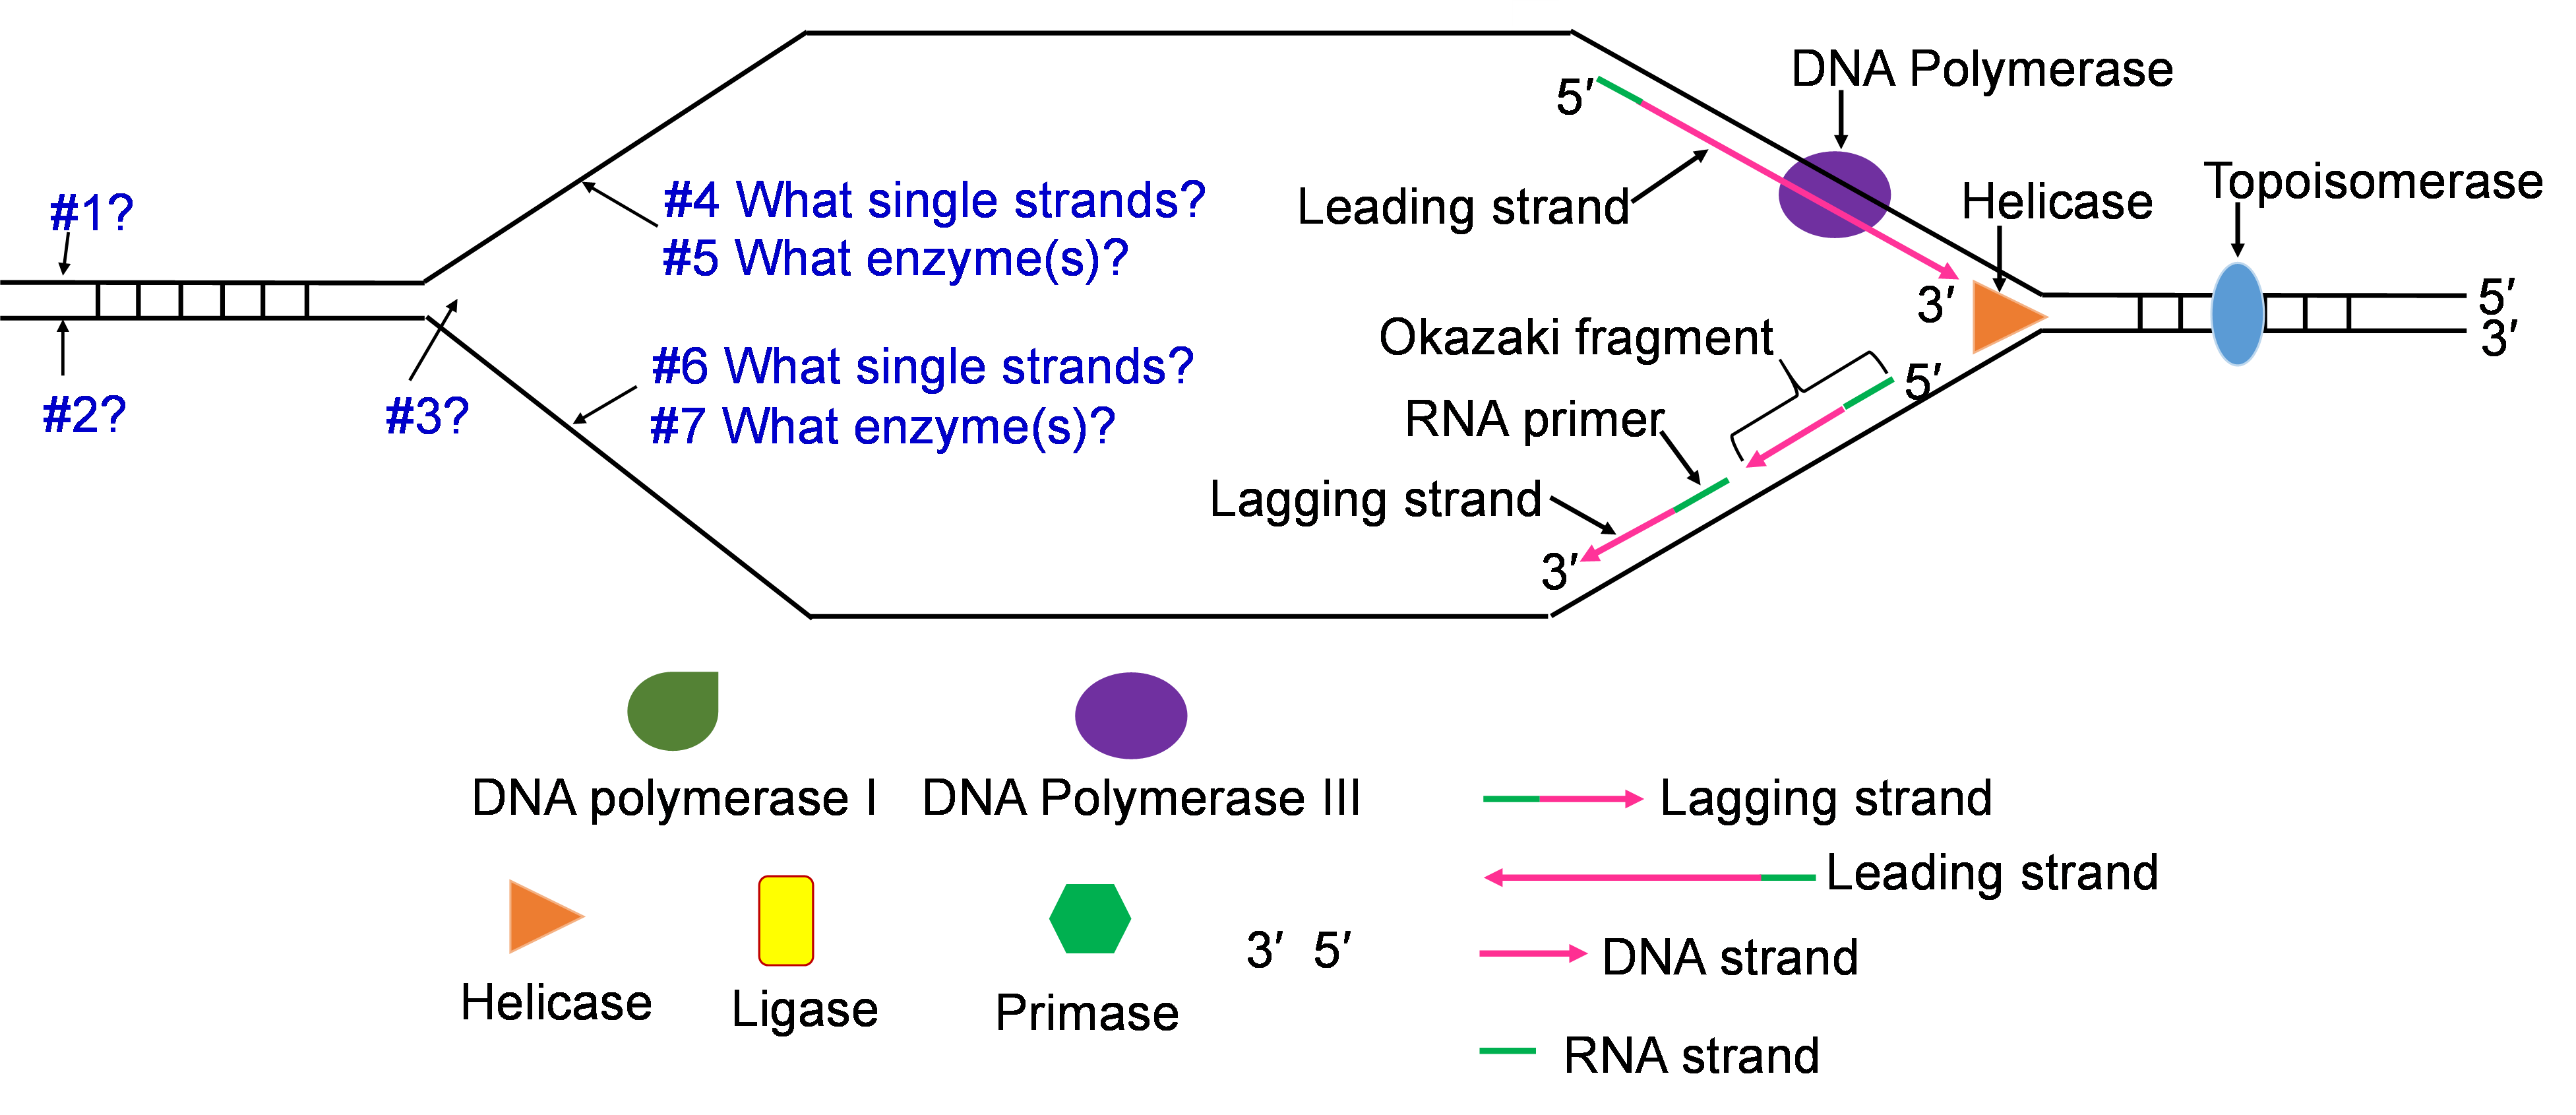 A la izquierda, hay #1 en la línea superior de la hebra y #2 en la línea inferior. #3 se coloca donde la hebra se abre en un embudo. #4 pregunta qué hebras individuales están en la línea superior. #5 pregunta qué enzimas están en la línea superior. #6 pregunta qué hebras individuales están en la línea inferior. #7 pregunta qué enzimas hay en la línea inferior. pregunta qué enzimas están en la línea superior. línea de fondo. A la derecha, la cadena principal es de 5' a 3' con una ADN polimerasa y Helicasa abriendo la hebra. La cadena inferior es de 3' a 5' con una hebra retrasada, cebador de ARN y un fragmento de Okazaki.